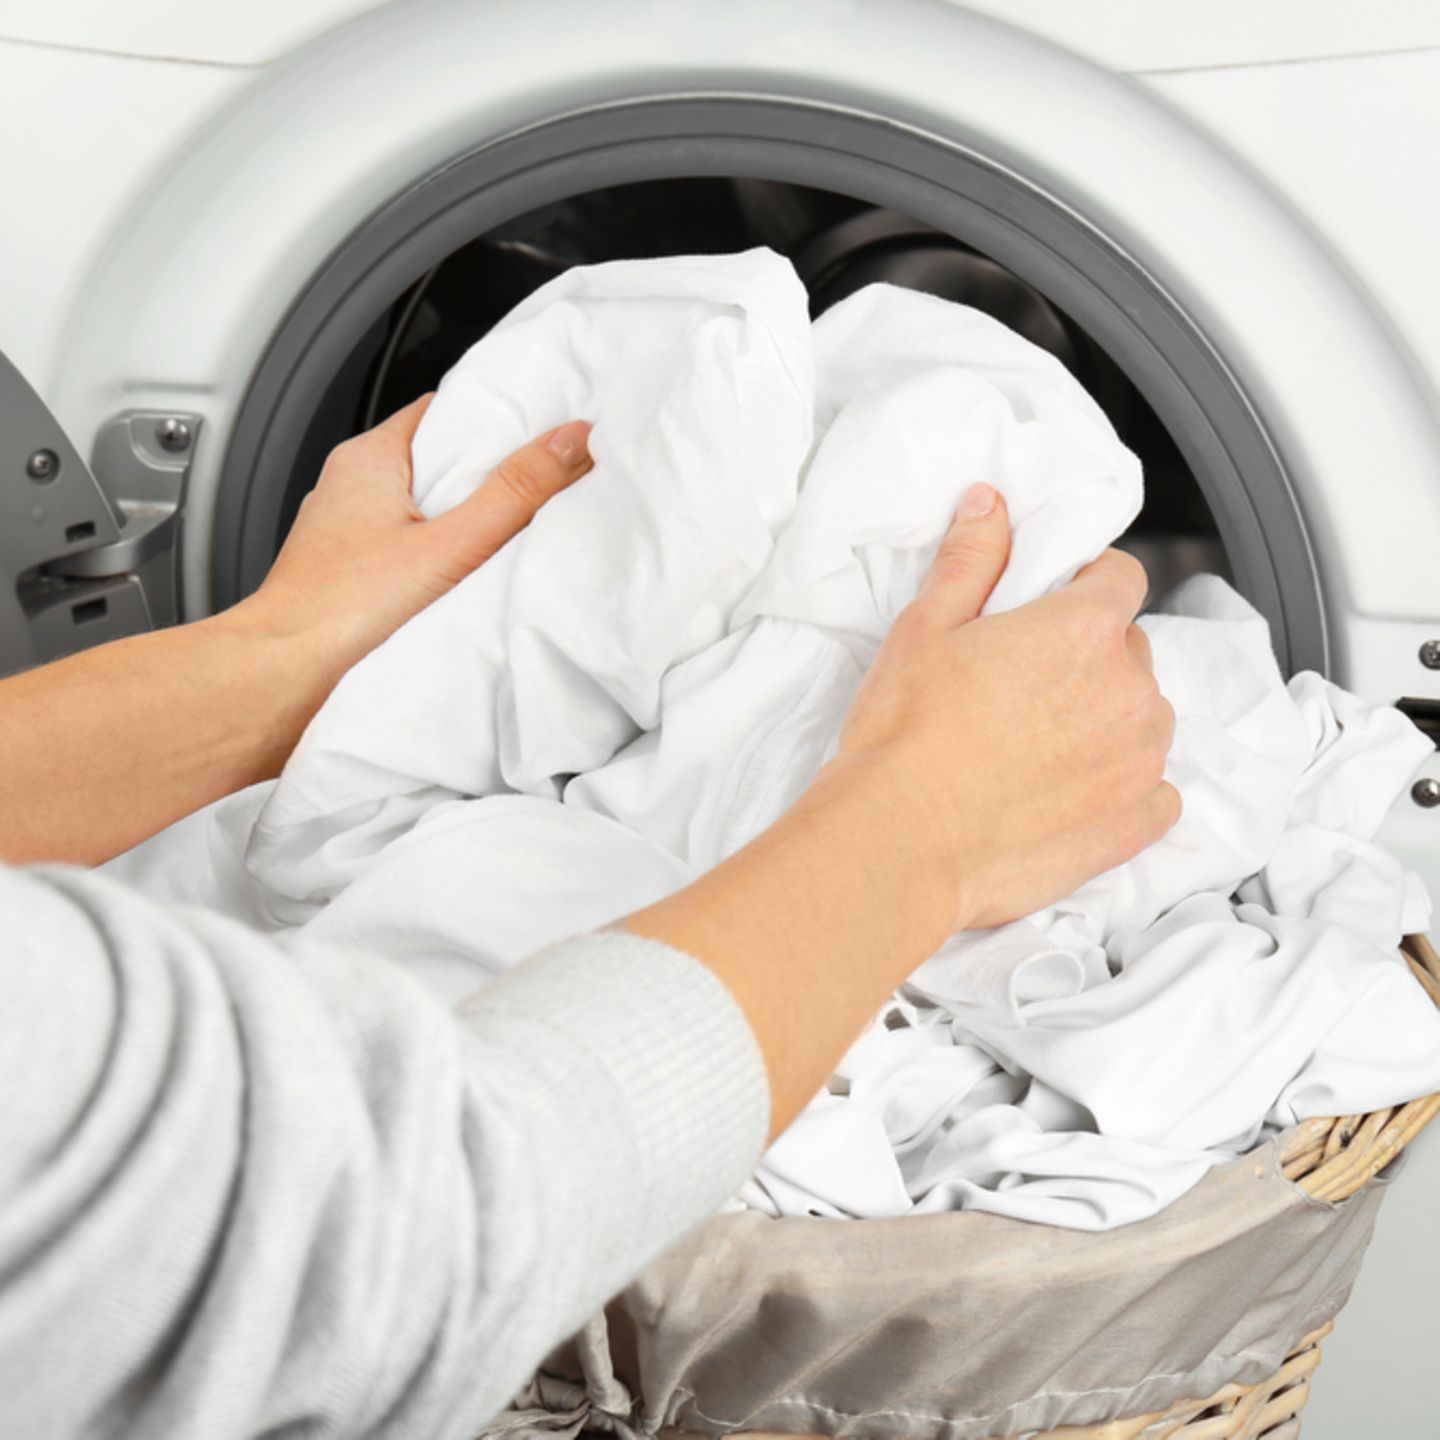 Wäsche bei 40 grad waschen bei krätze Tatsache oder